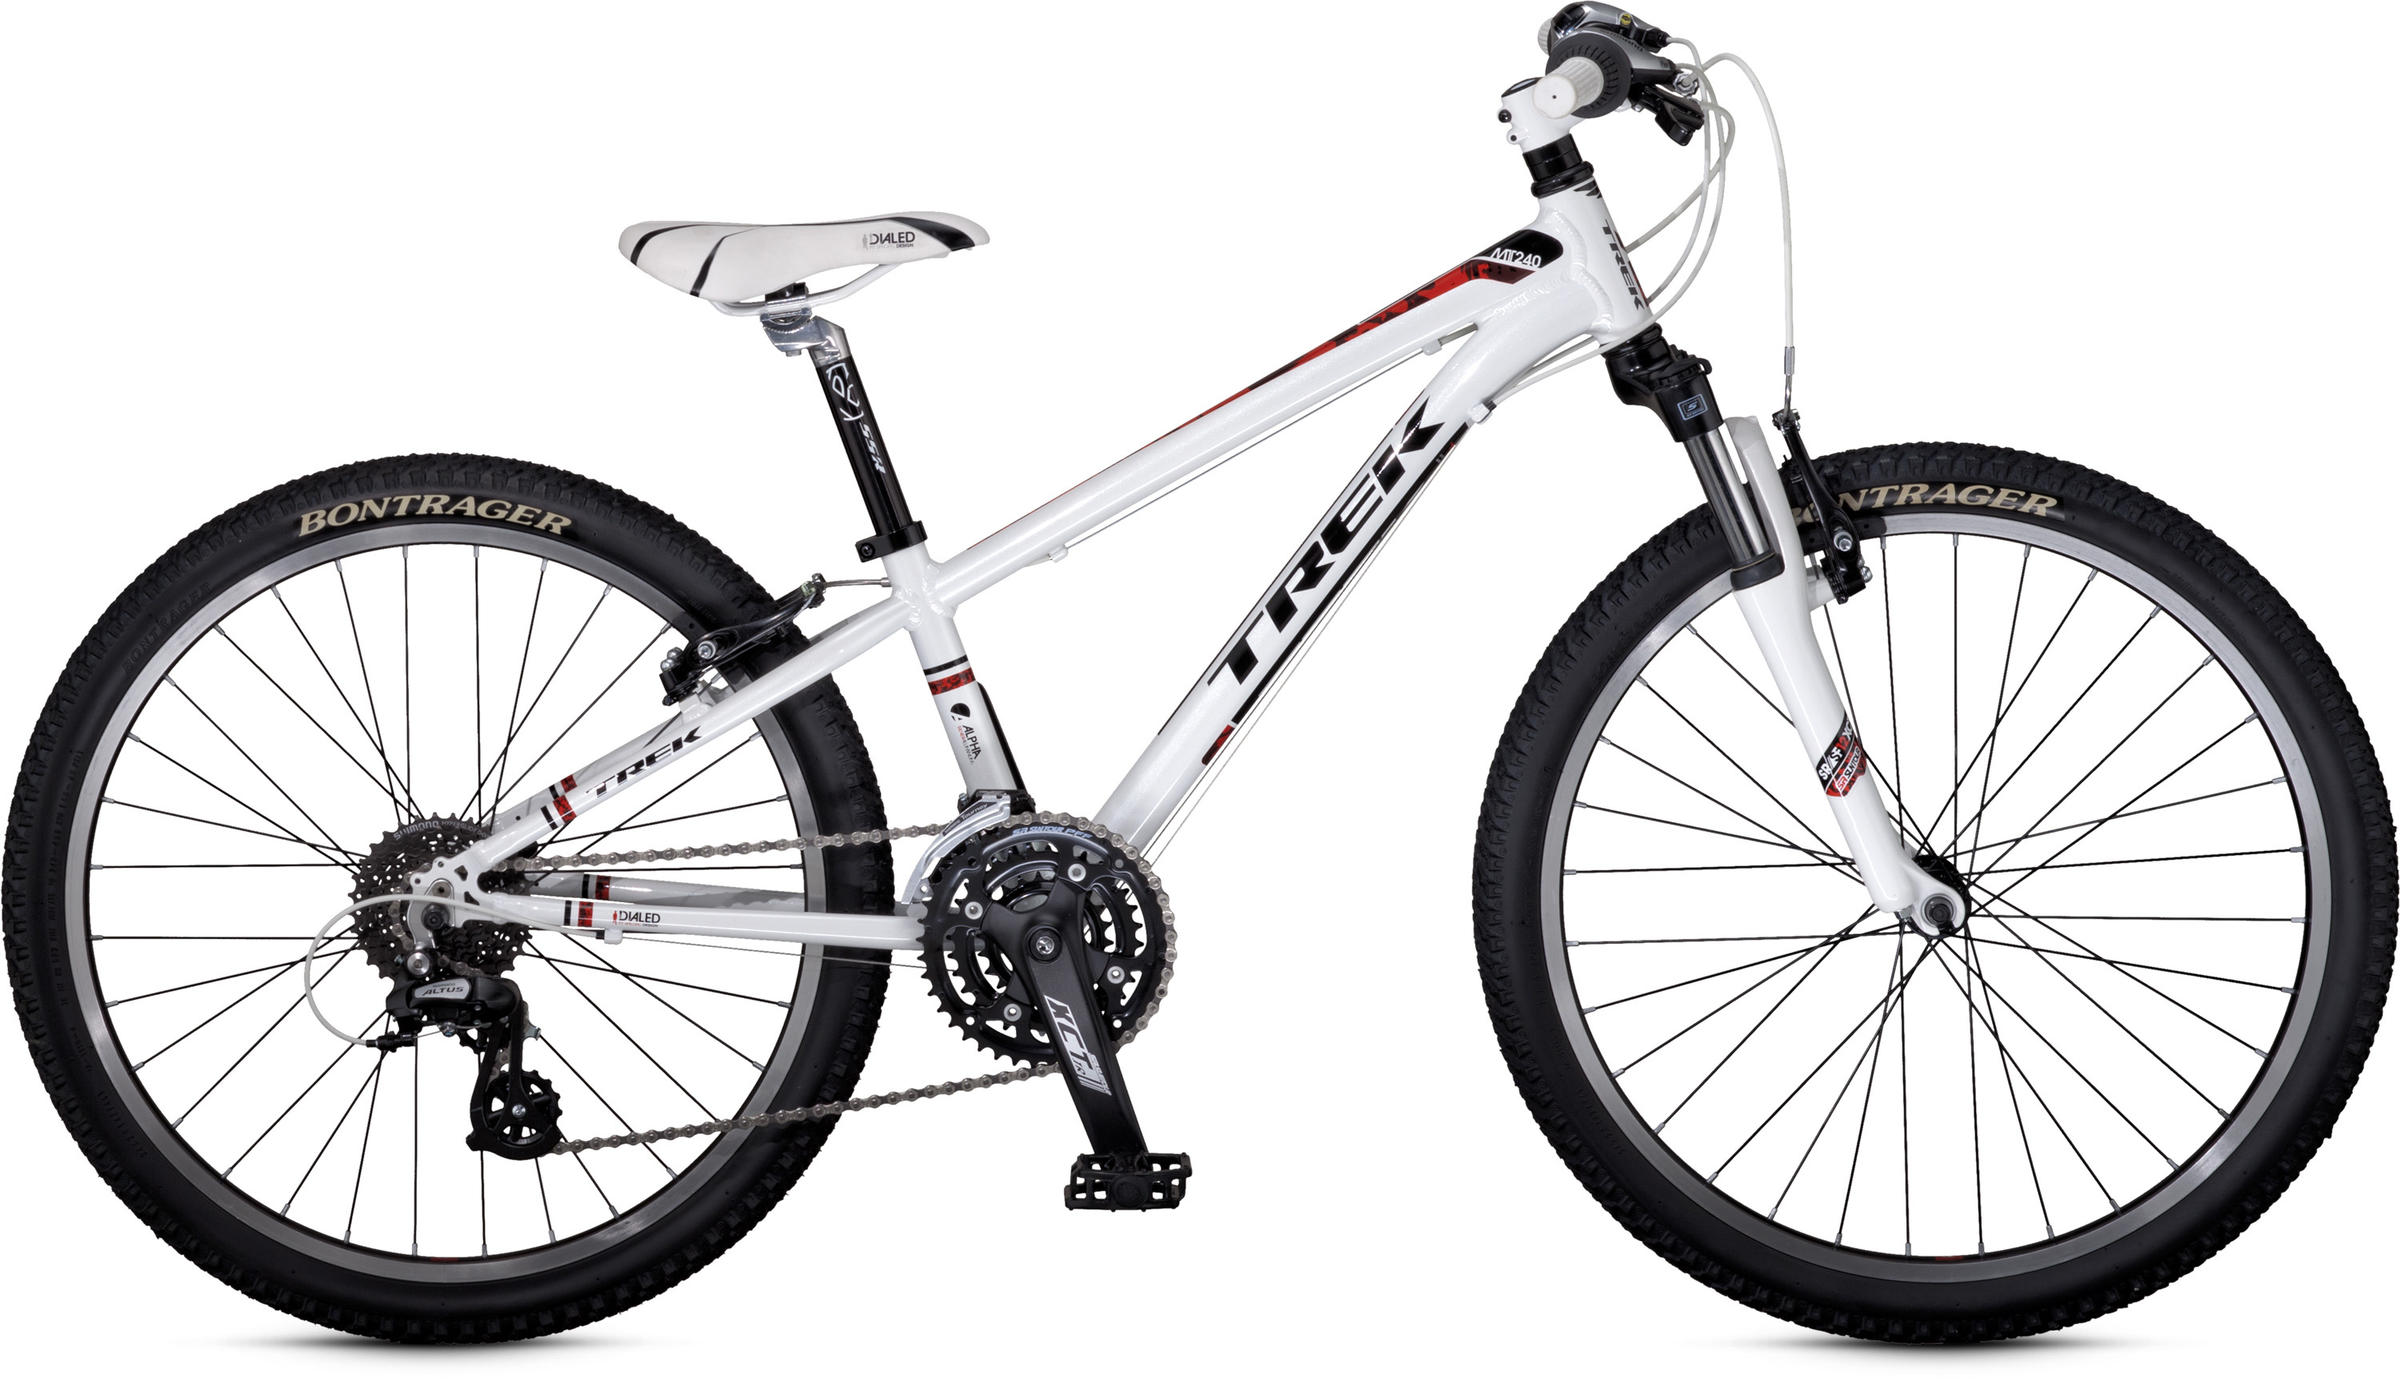 2013 Trek MT 240 - Bicycle Details 